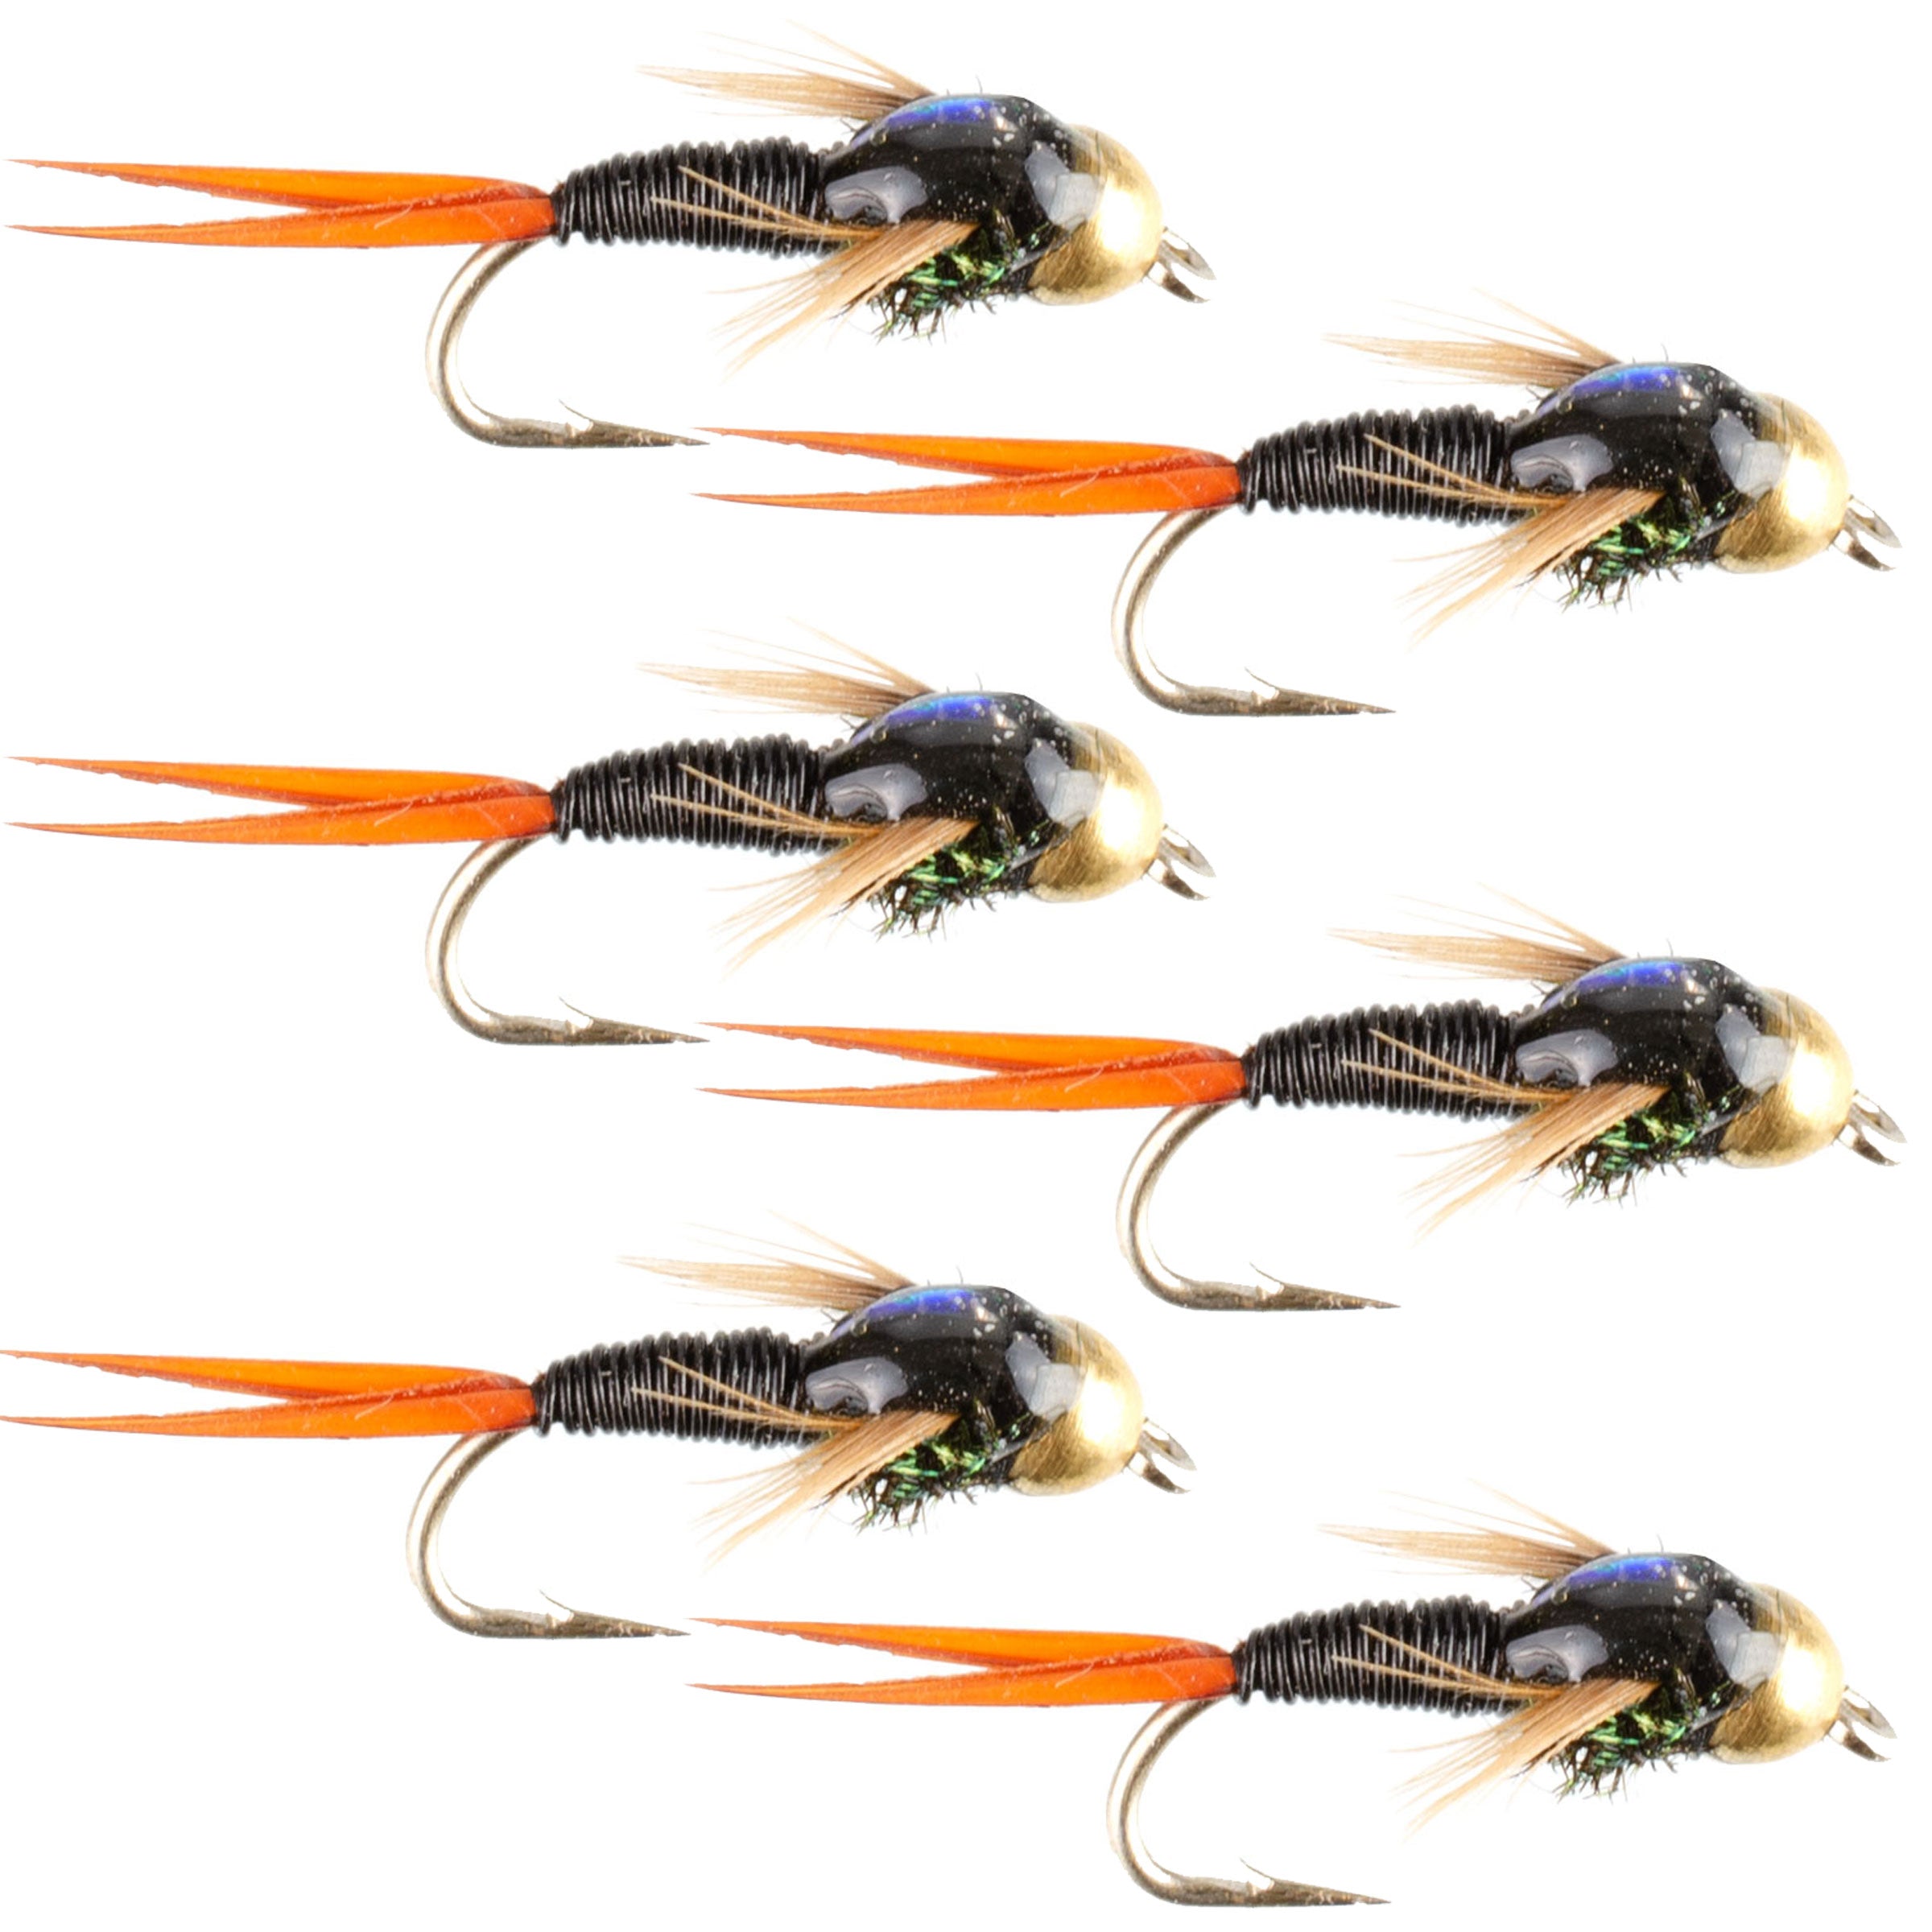 Bead Head Black Copper John Nymph Fly Fishing Flies - Set of 6 Flies Hook Size 18